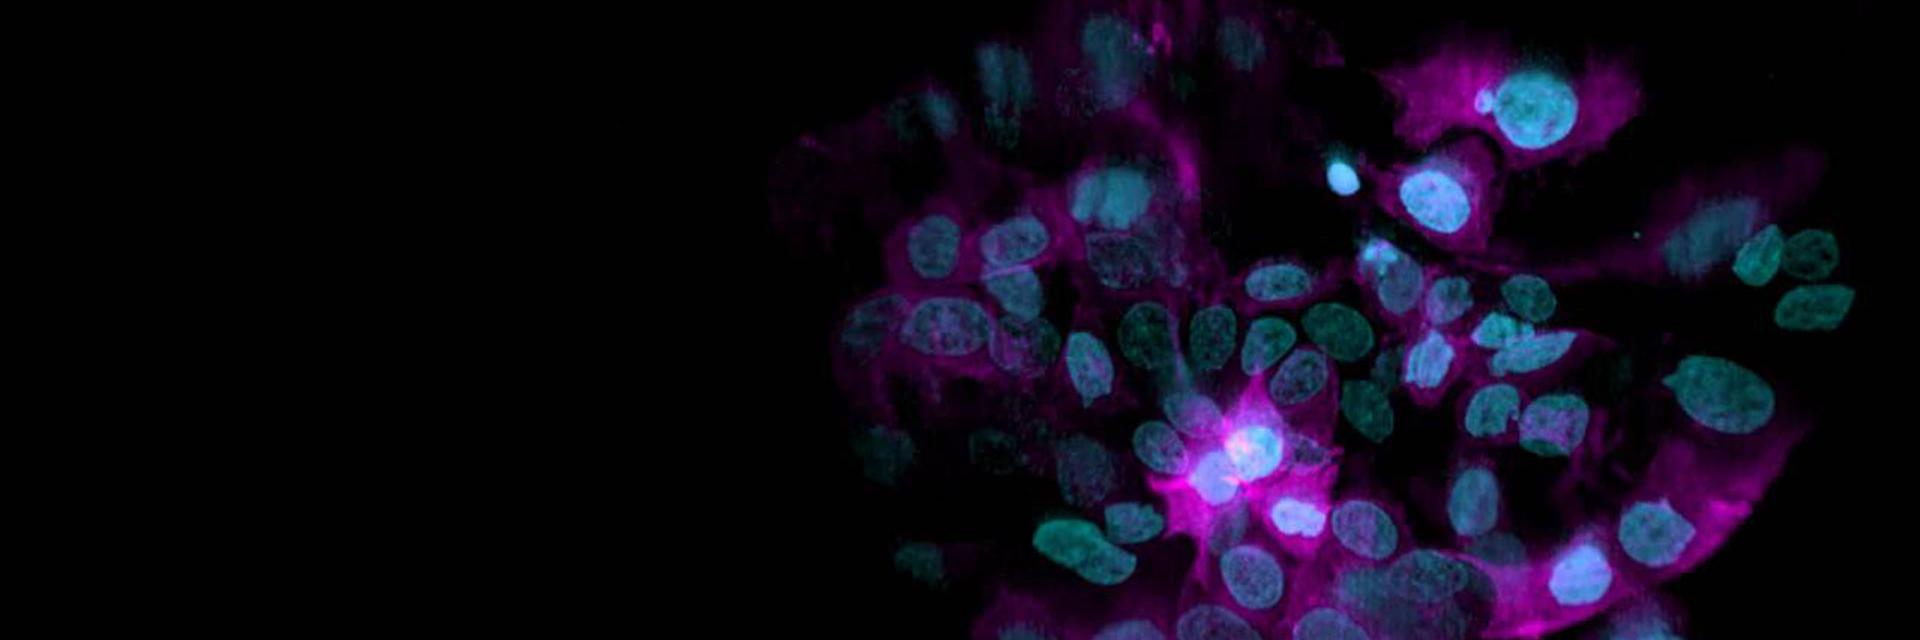 对细胞球进行三维渲染，该细胞球由表达H2B-mCherry（青色）和α-微管蛋白-mEGFP（品红色）的细胞组成。